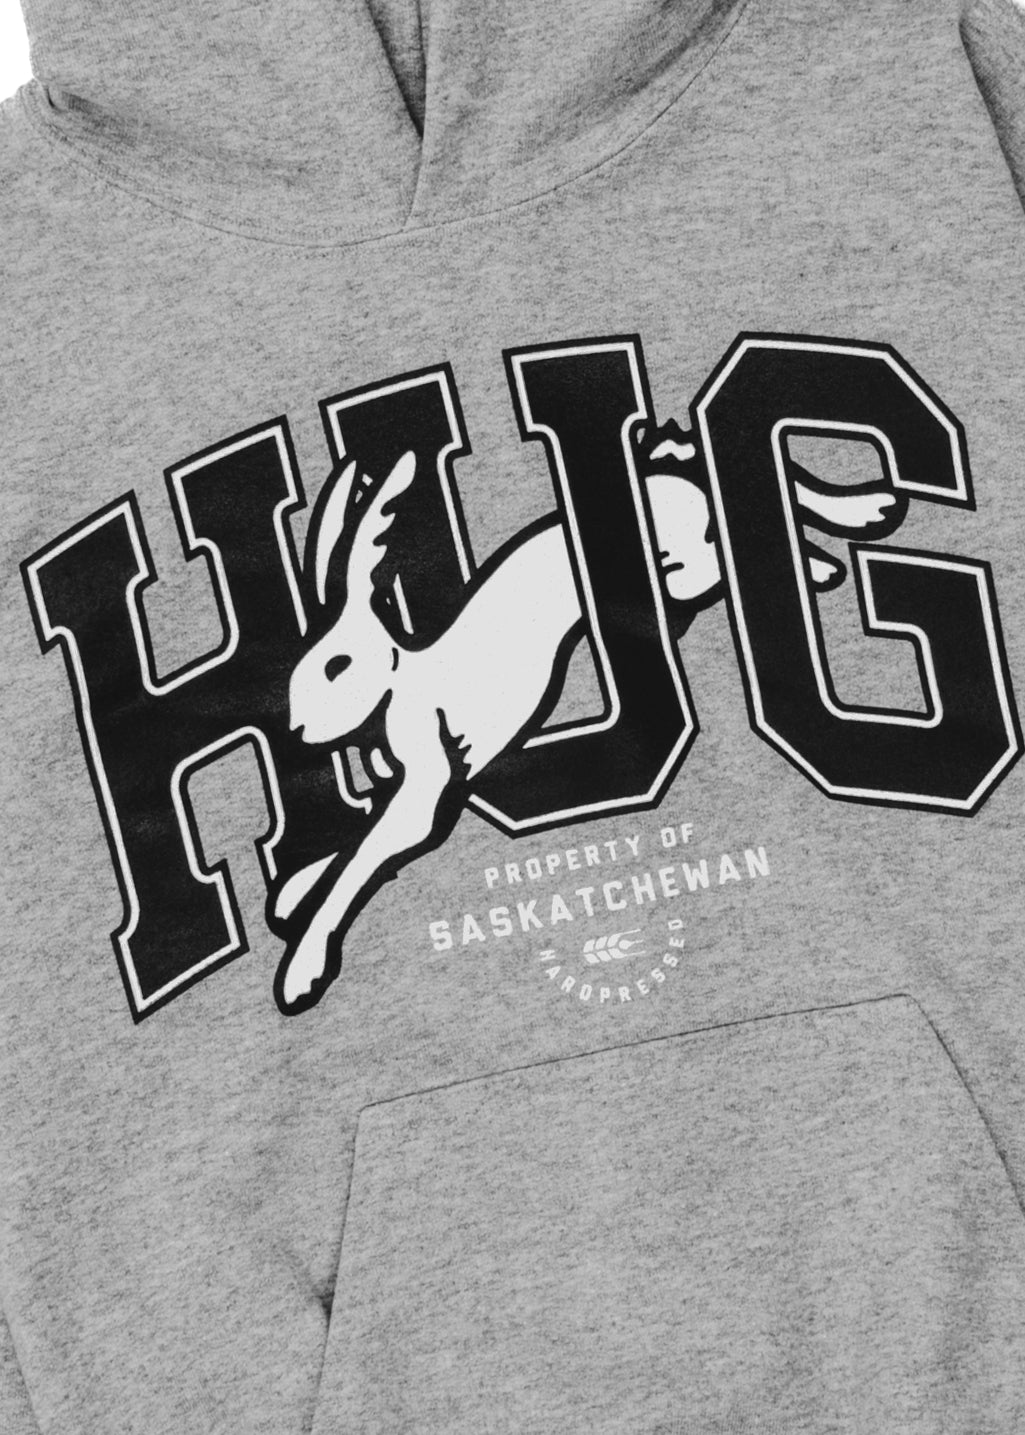 HUG | Grey | Kids - Hardpressed Print Studio Inc.